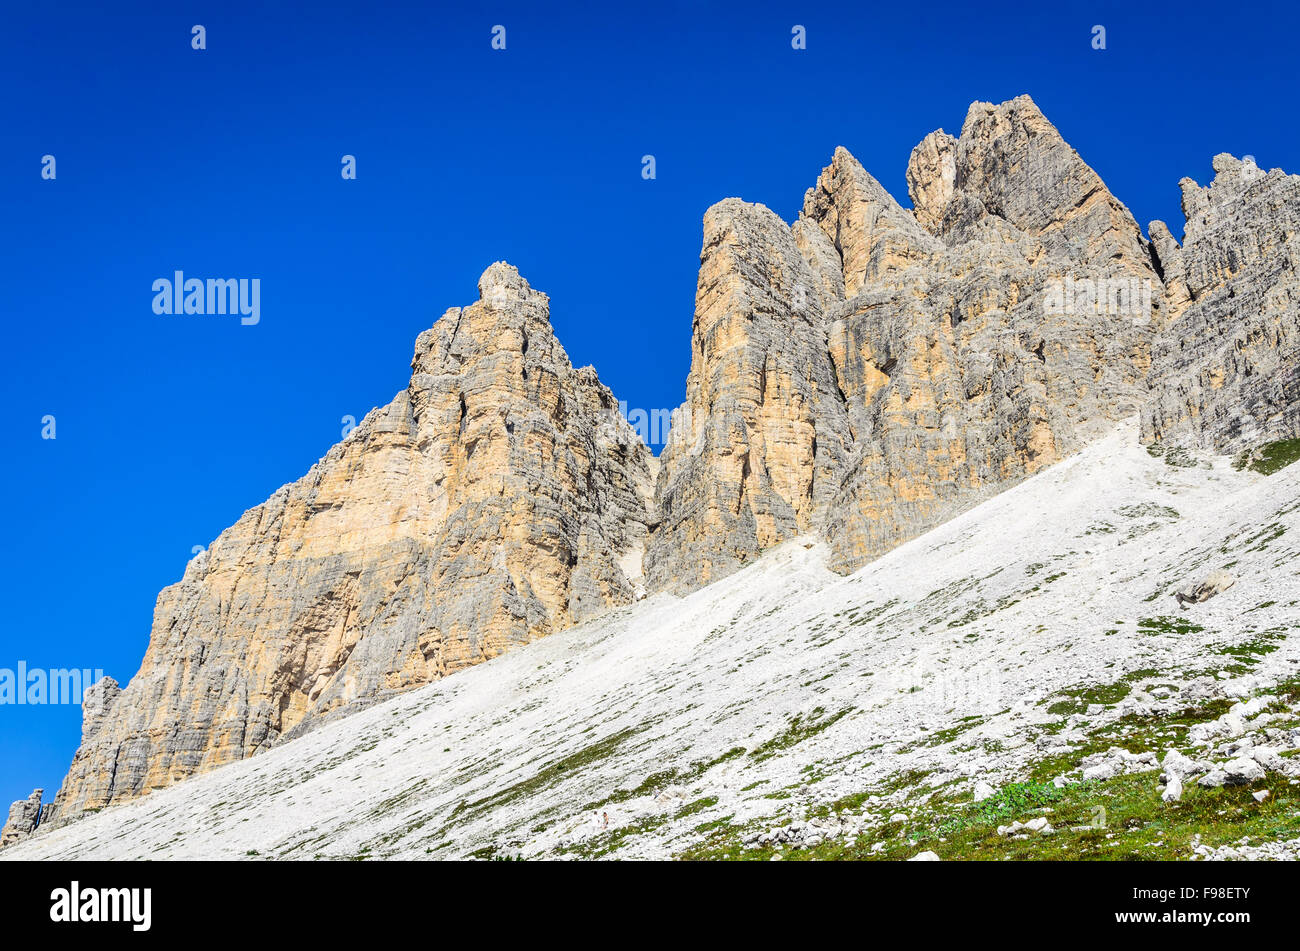 Vista del famoso Tre Cime di Lavaredo (Drei Zinnen) nelle Dolomiti, uno dei più noti gruppi di montagna in Europa. Foto Stock